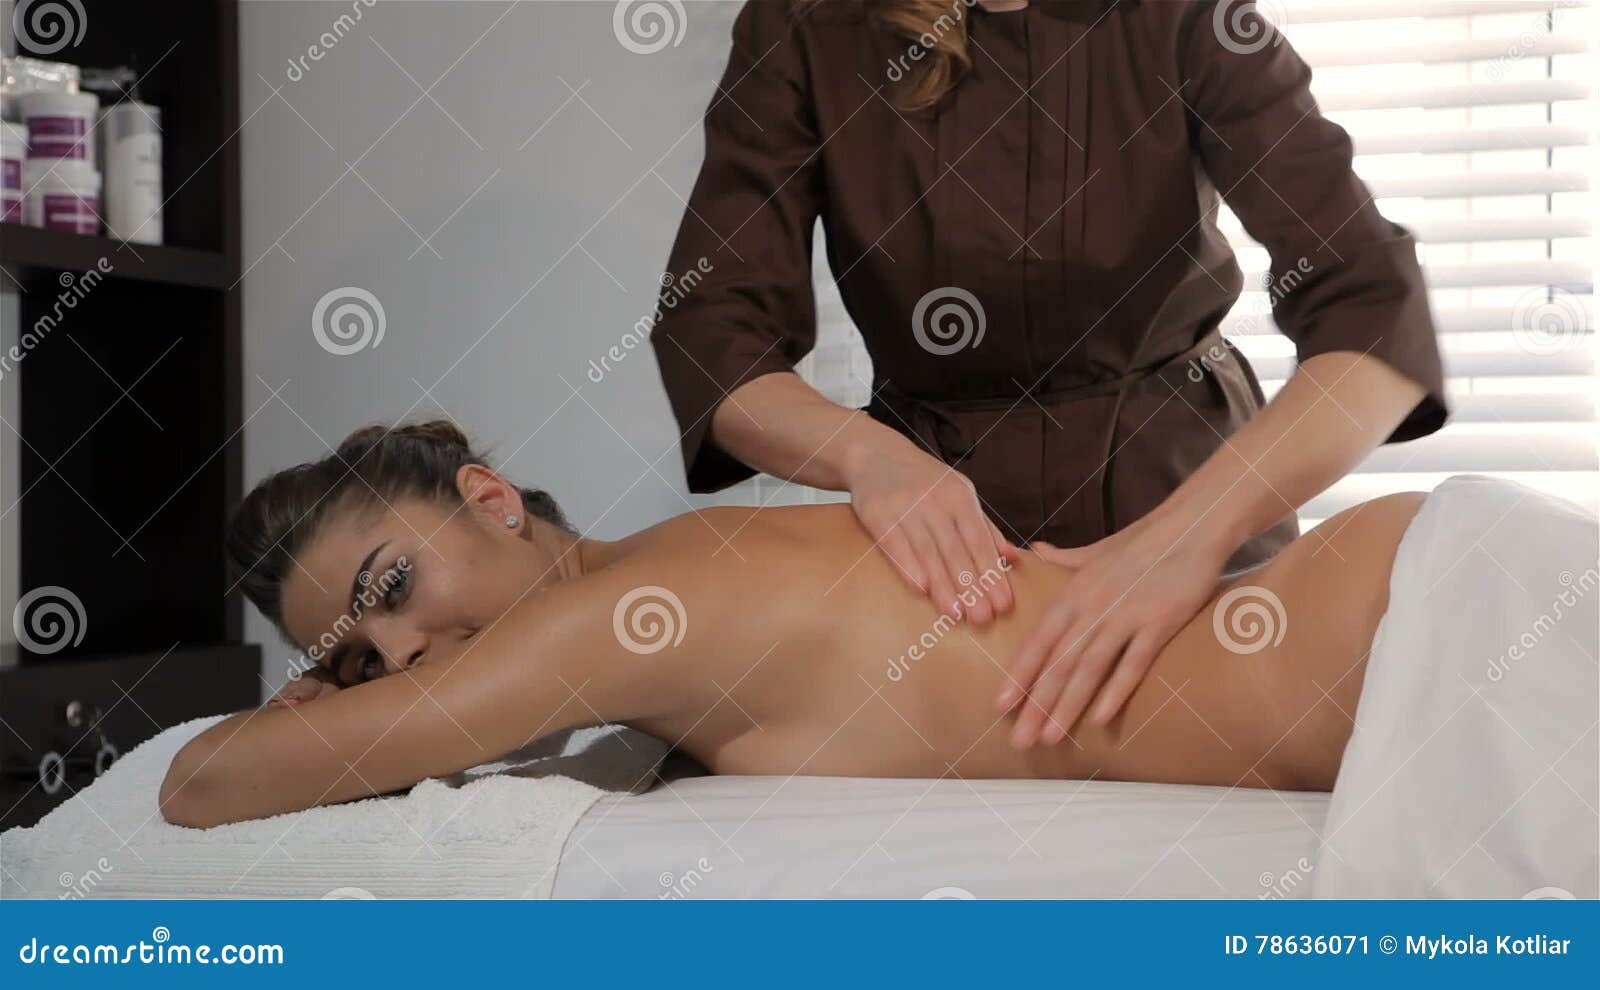 https://thumbs.dreamstime.com/z/female-masseur-massages-girl-s-back-massaging-girls-beauty-salon-side-view-gorgeous-naked-brunette-having-massage-78636071.jpg